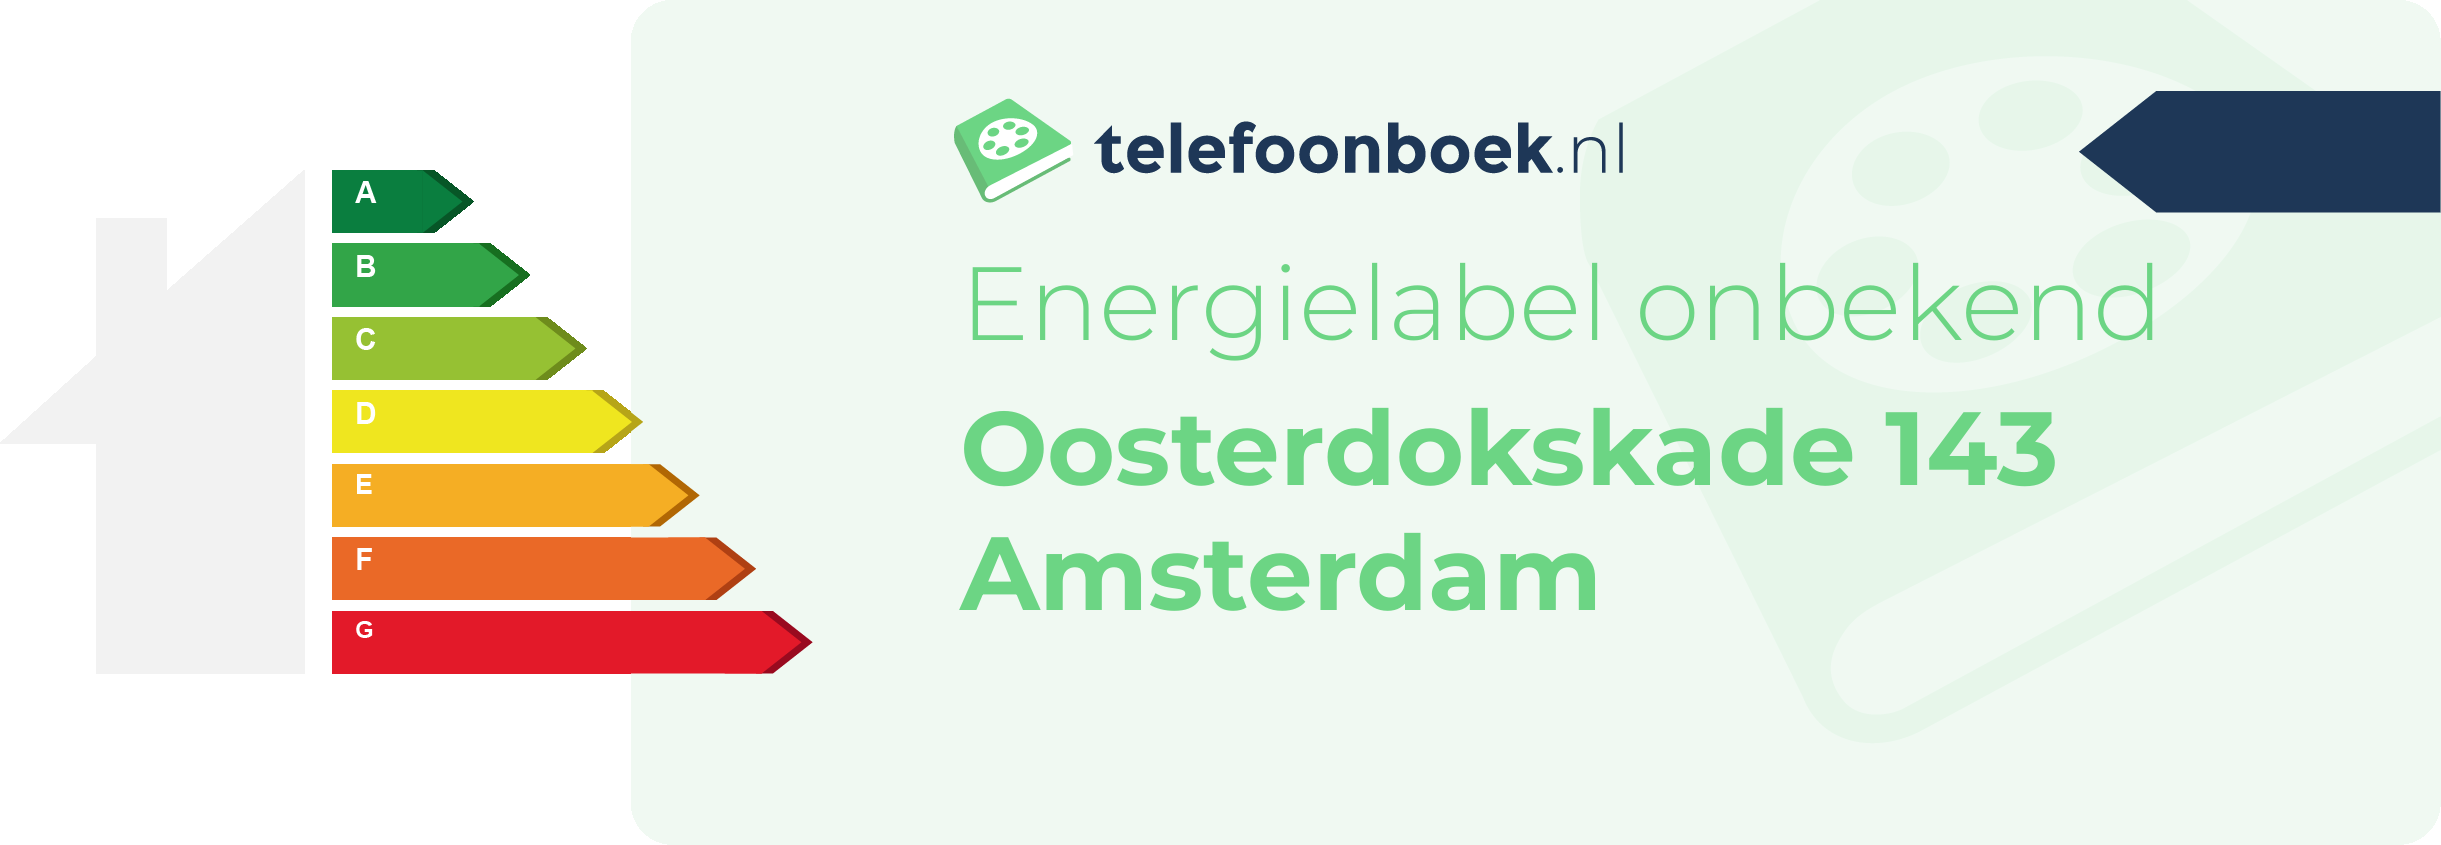 Energielabel Oosterdokskade 143 Amsterdam